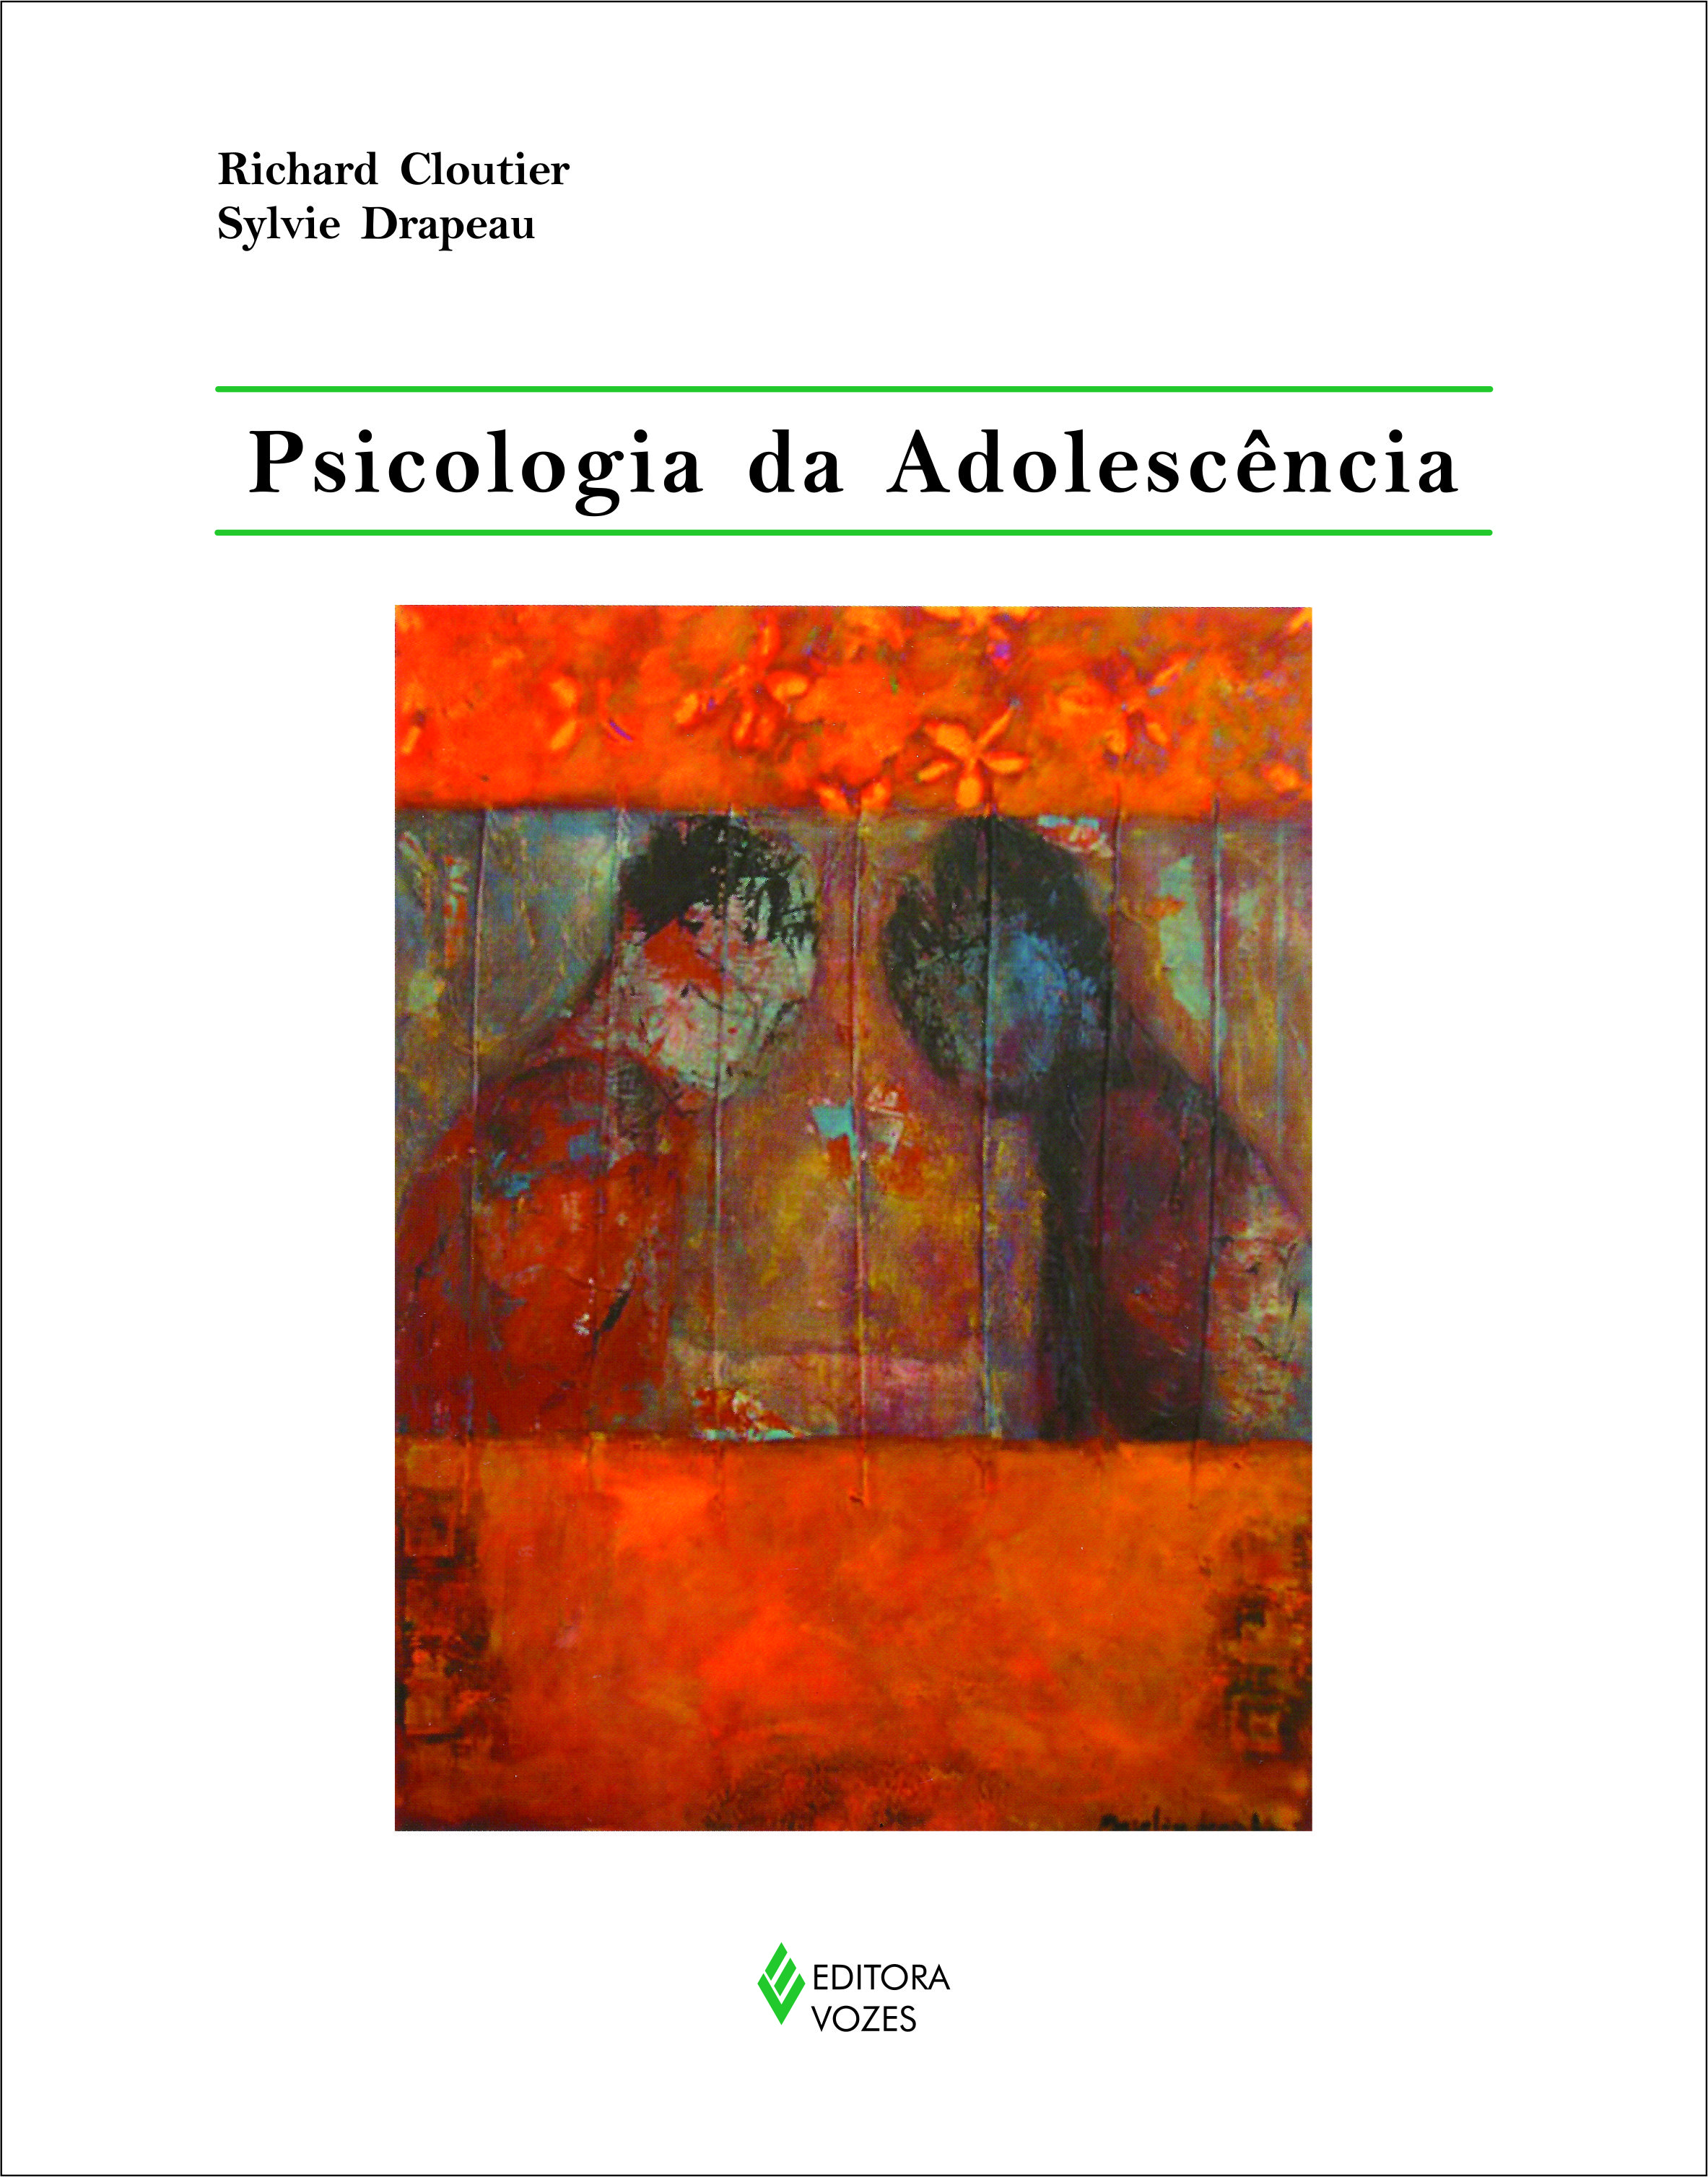 PSICOLOGIA DA ADOLESCENCIA